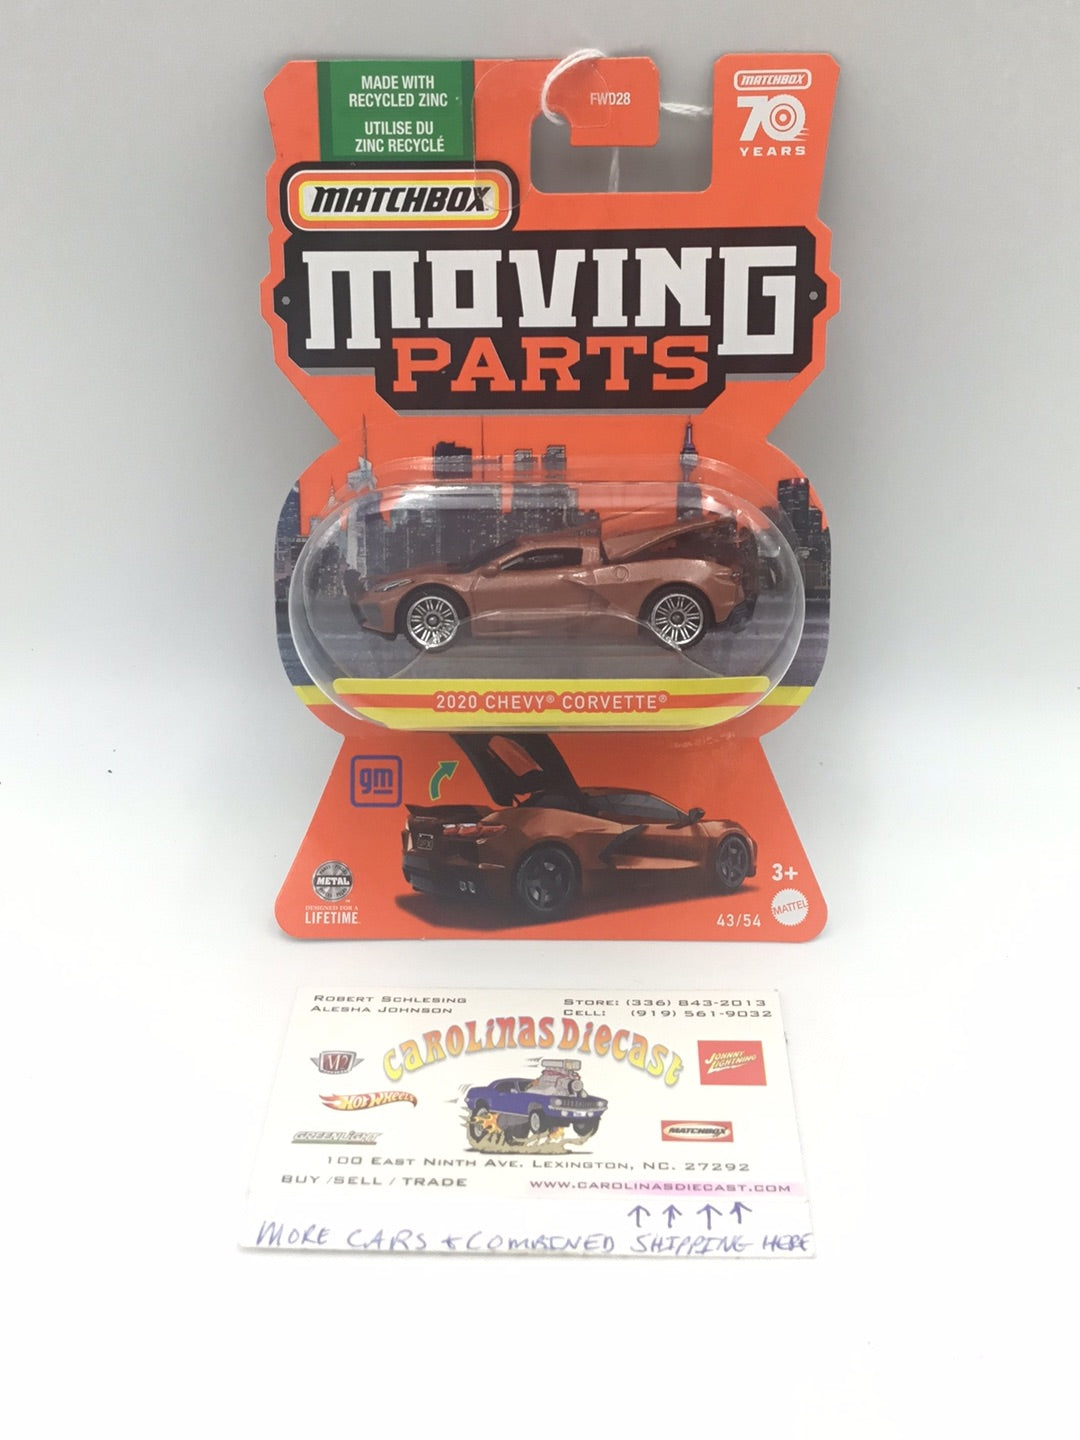 Matchbox Moving Parts 2020 Chevy Corvette copper